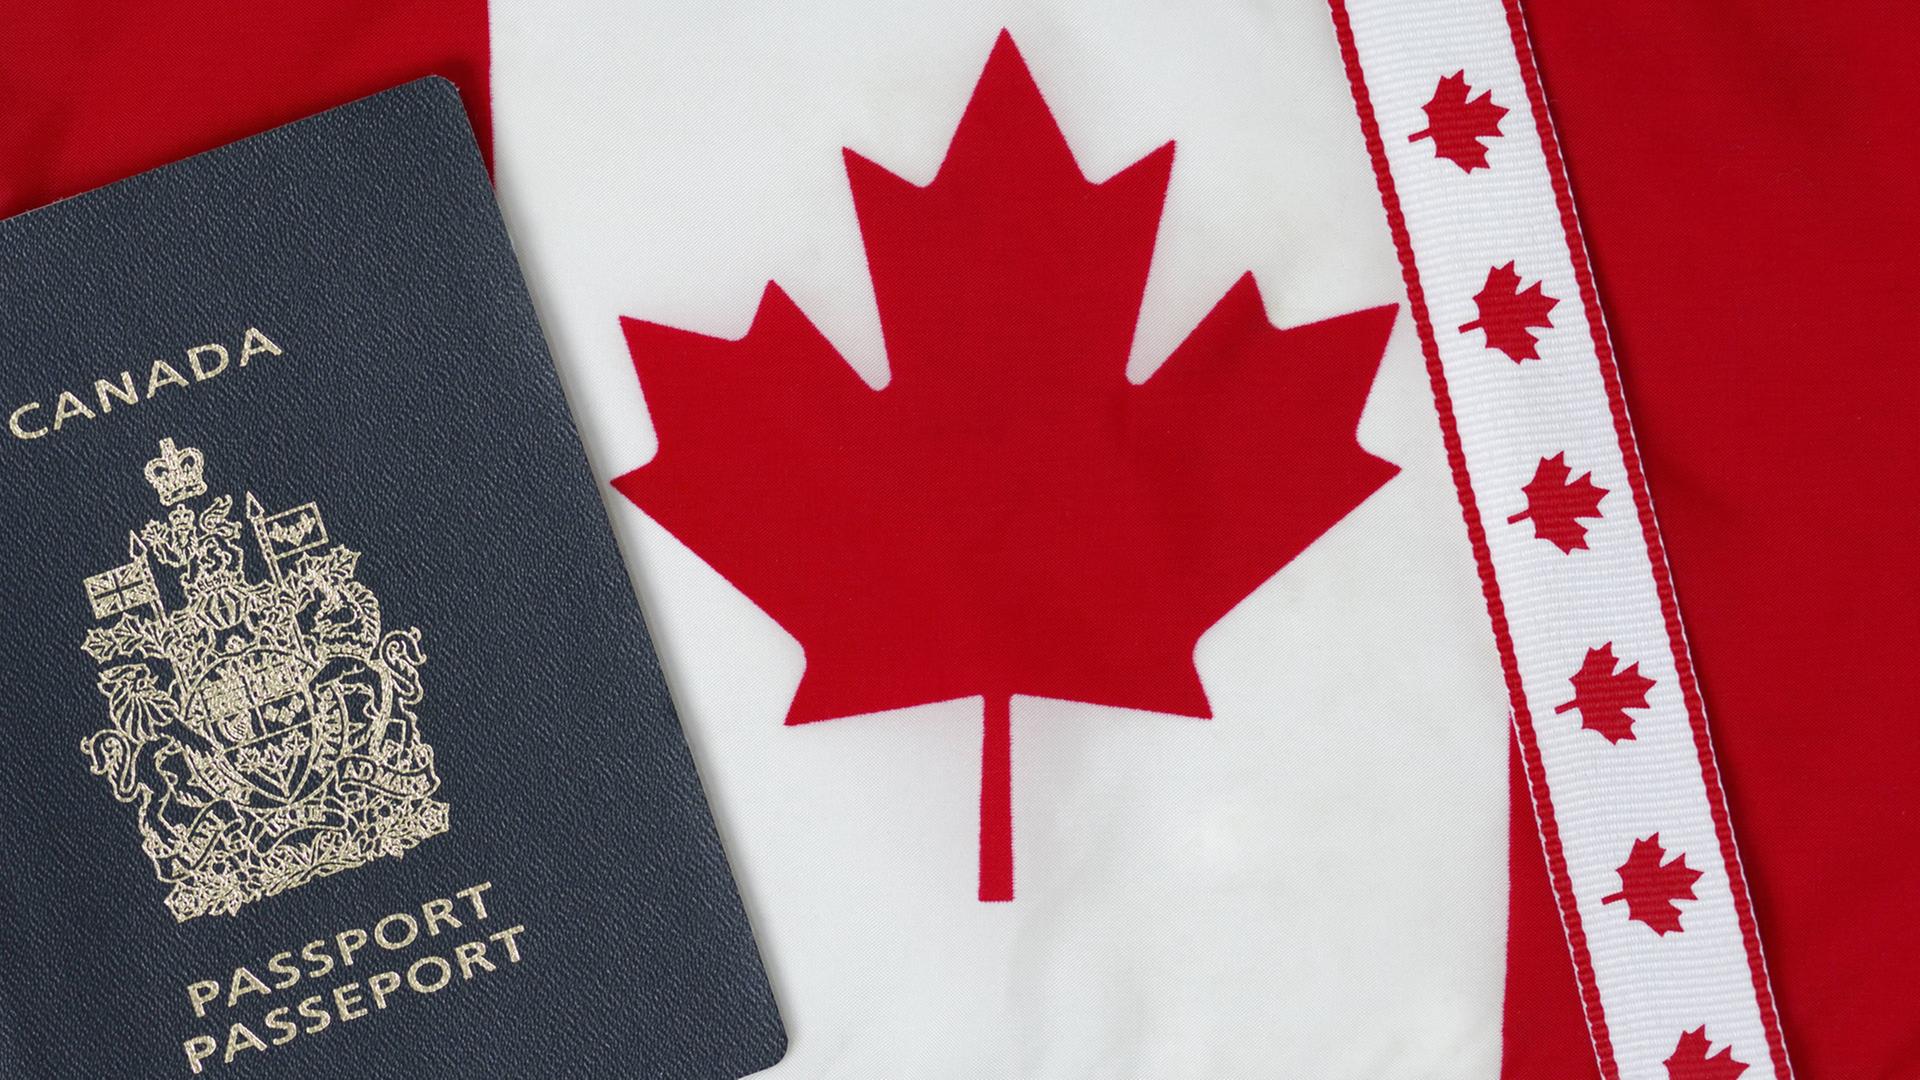 Einwanderer fühlen sich in Kanada willkommen geheißen.